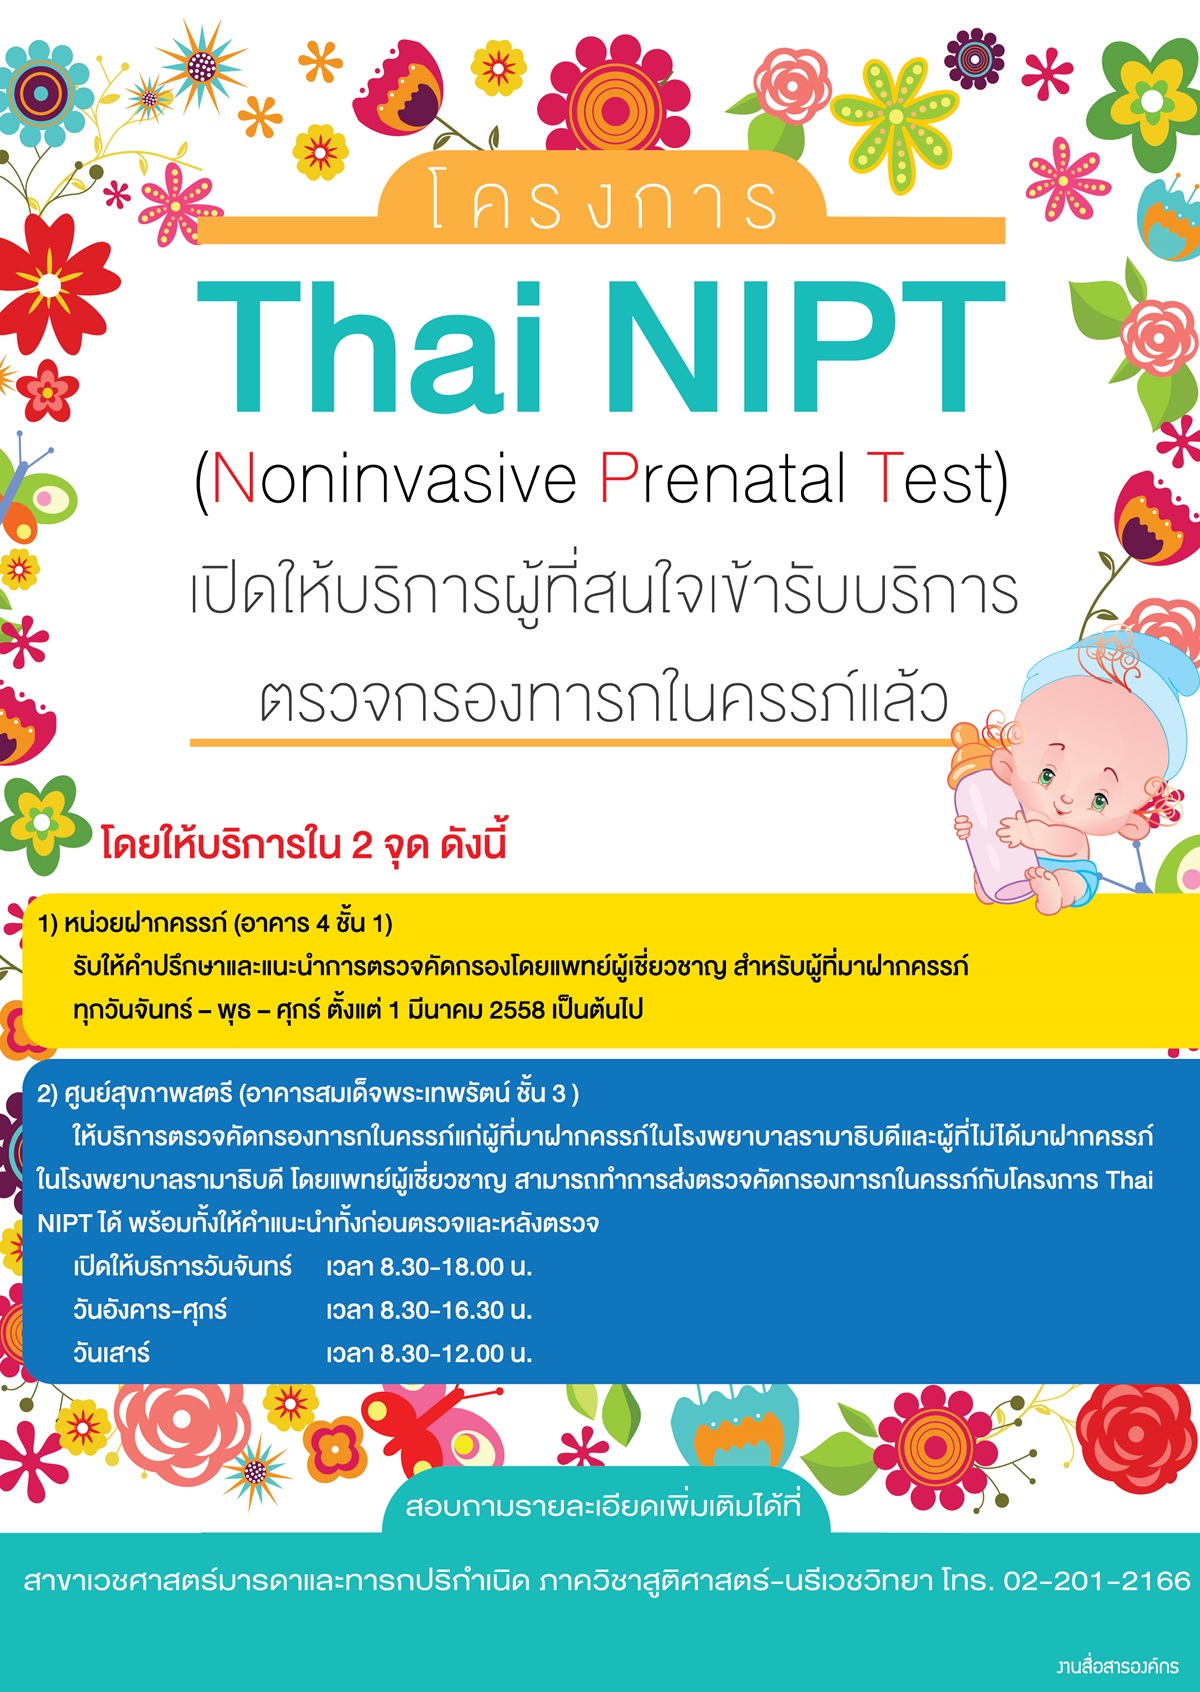 โครงการ Thai NIPT (Noninvasive Prenatal Test) 